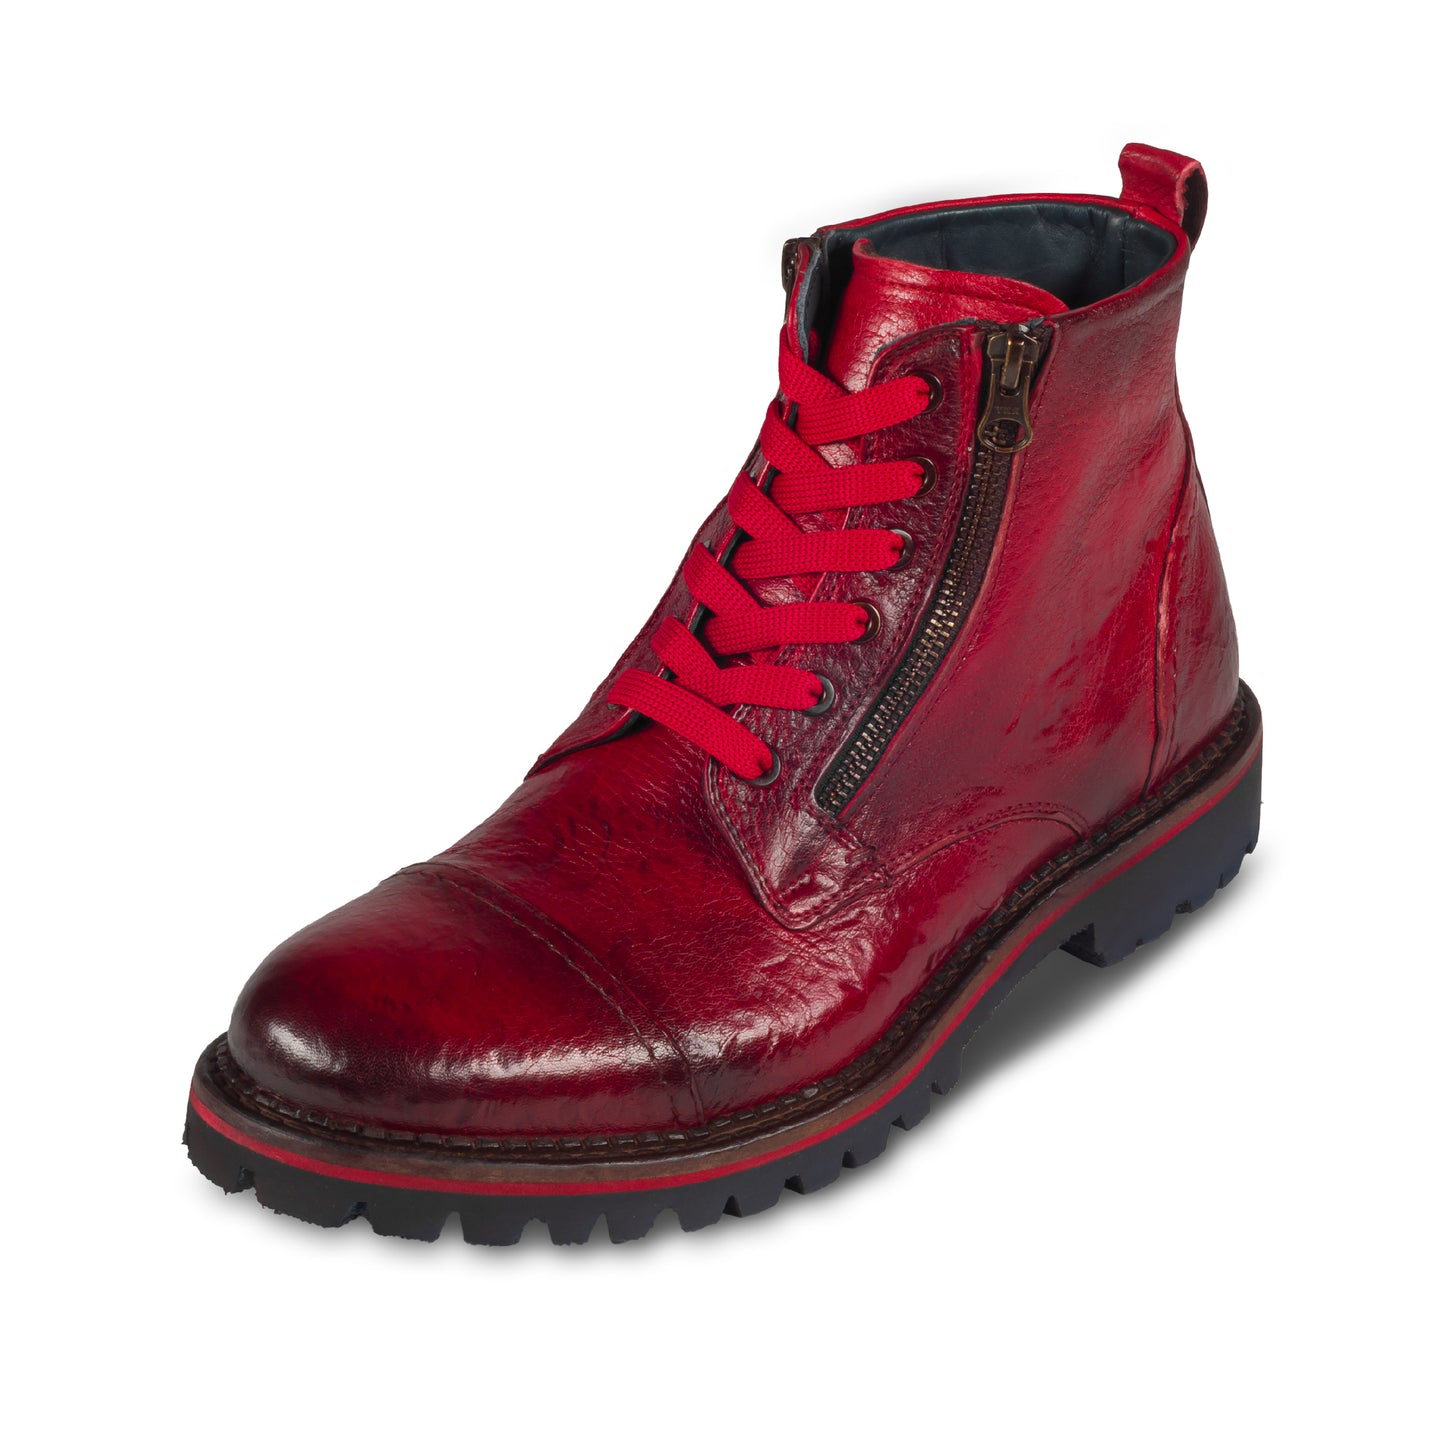 LORENZI - Italienische Herren Schnür-Boots, Kalbsleder-Stiefelette rot. Handgefertigt und durchgenäht. Schräge Ansicht linker Schuh.